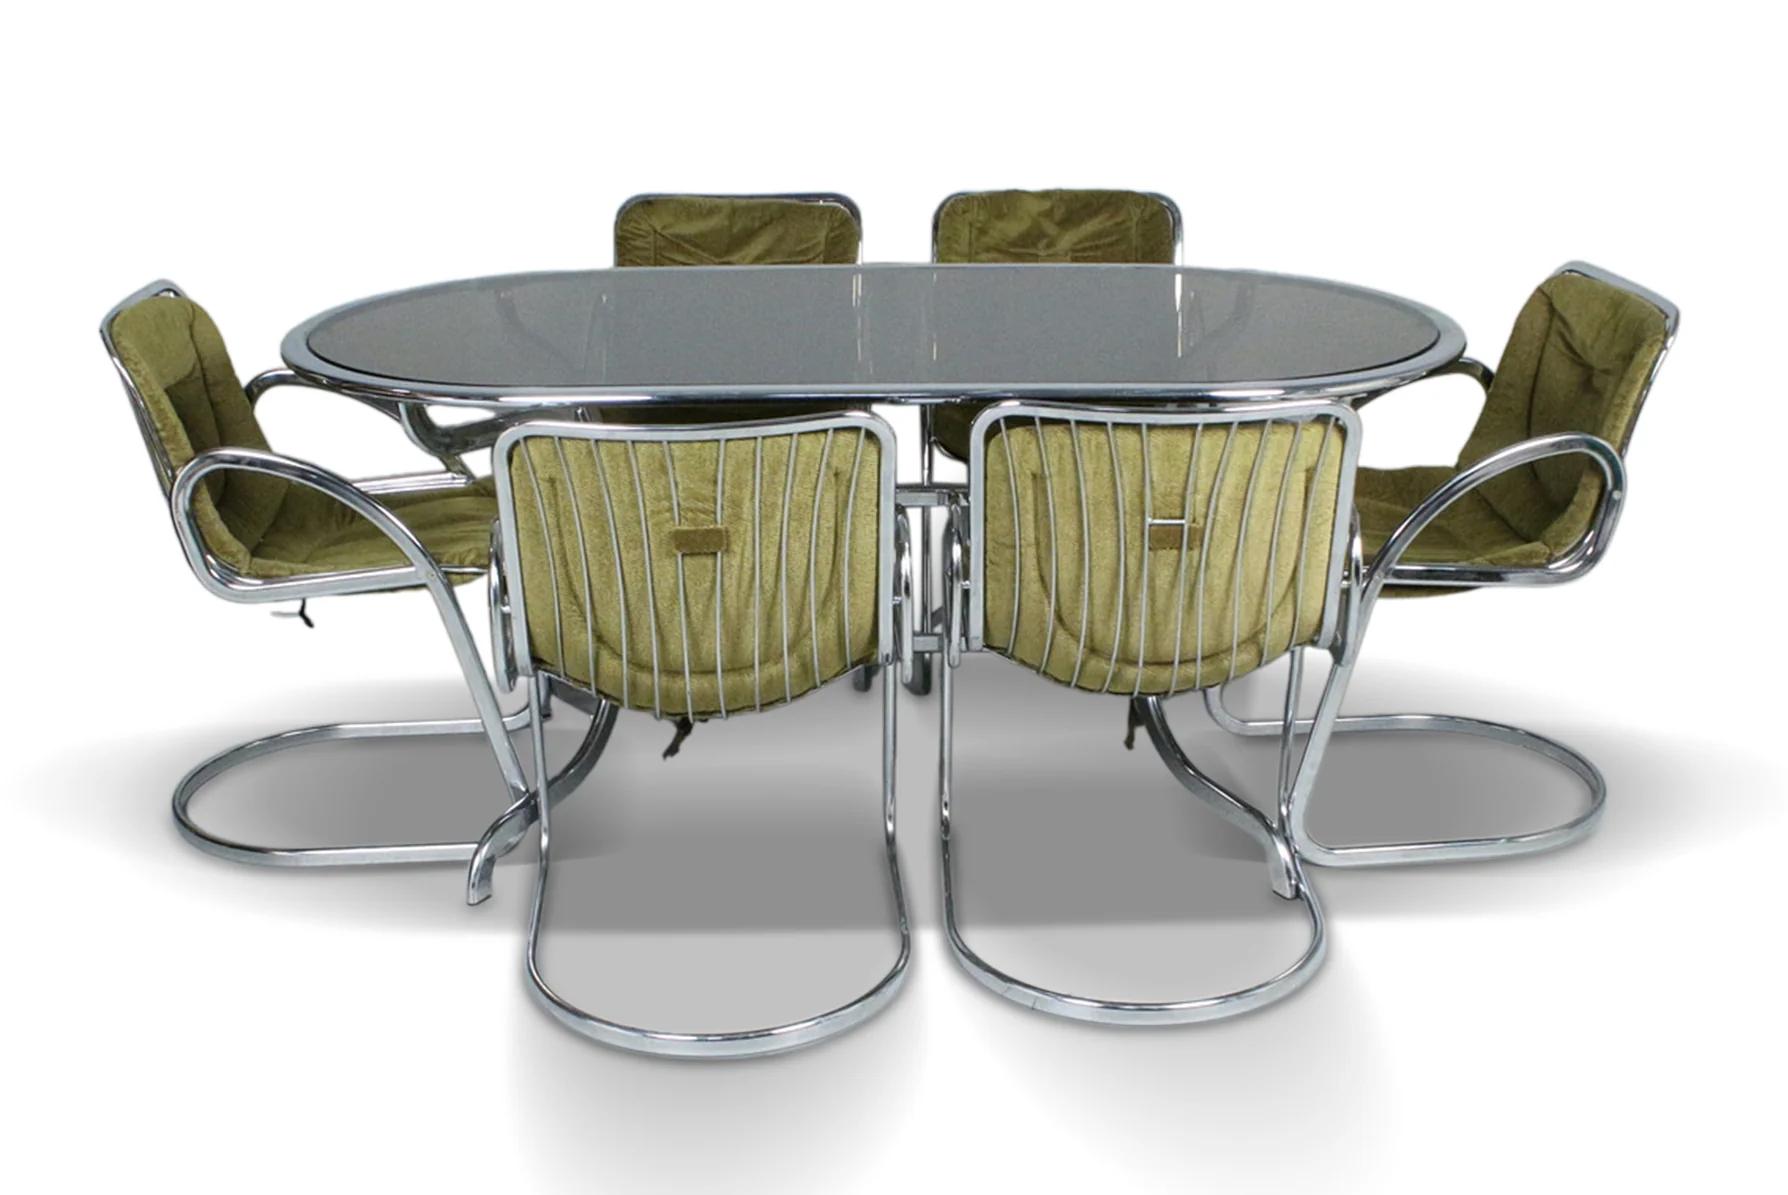 Origine : Italie
Designer : Gastone Rinaldi
Fabricant : RIMA
Époque : 1970
MATERIAL : Chrome, verre
Dimensions : 66 (table) 19.5 (chaises)″ largeur x 29 (table) 20 (chaises)″ profondeur x 29 (table) 31 (chaises)″ hauteur

Condit : En excellent état